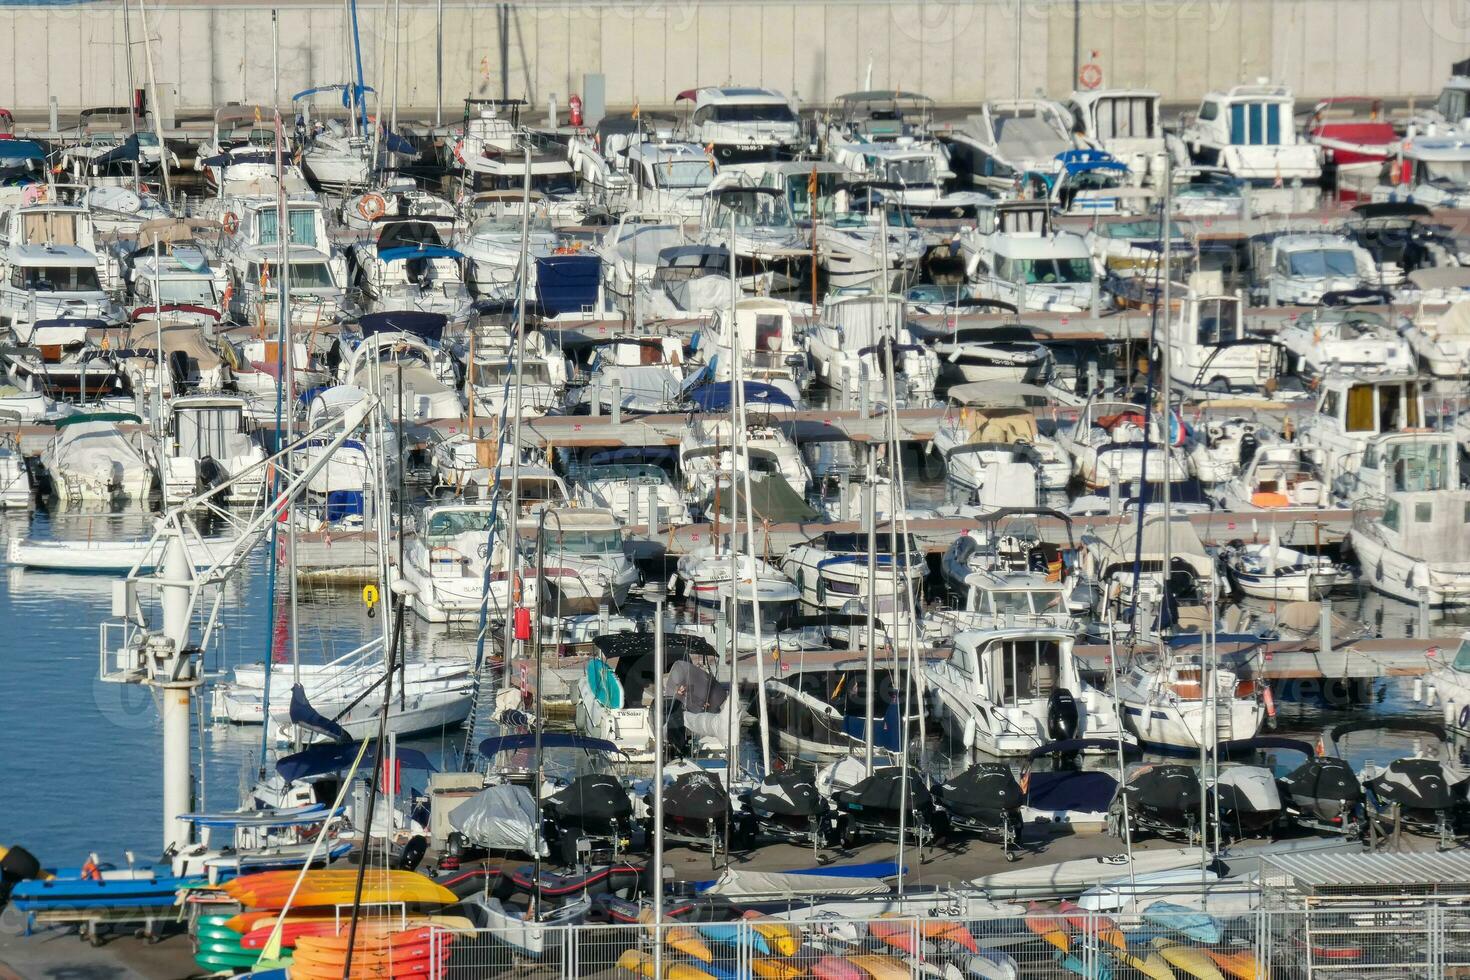 marina e pescaria porta dentro a Cidade do blanes em a catalão costa. foto